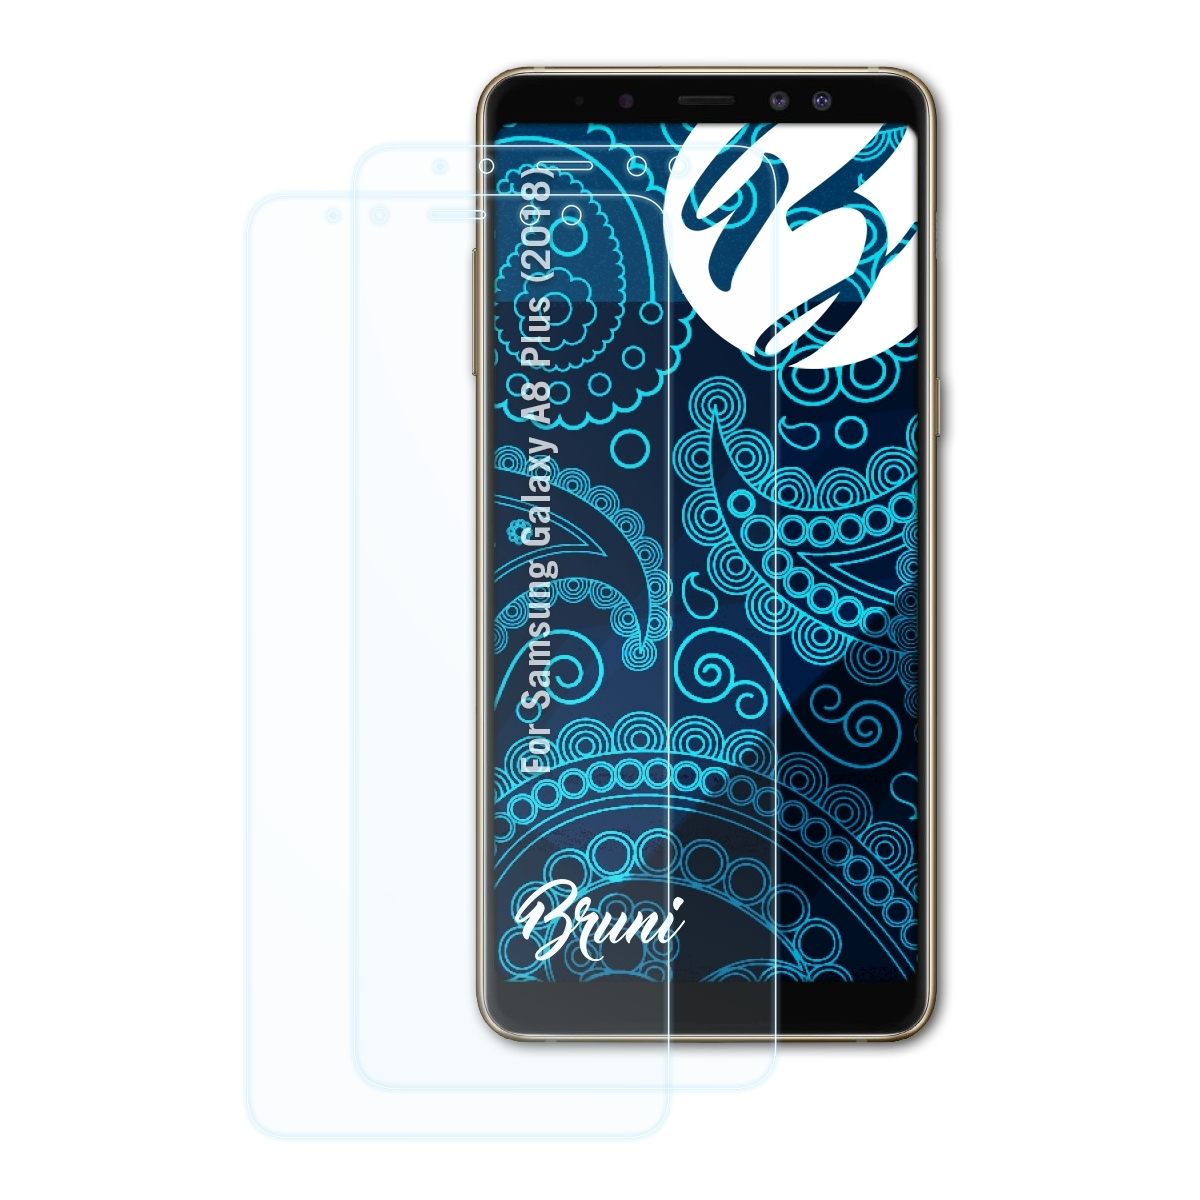 BRUNI 2x Basics-Clear Schutzfolie(für Samsung Plus (2018)) Galaxy A8